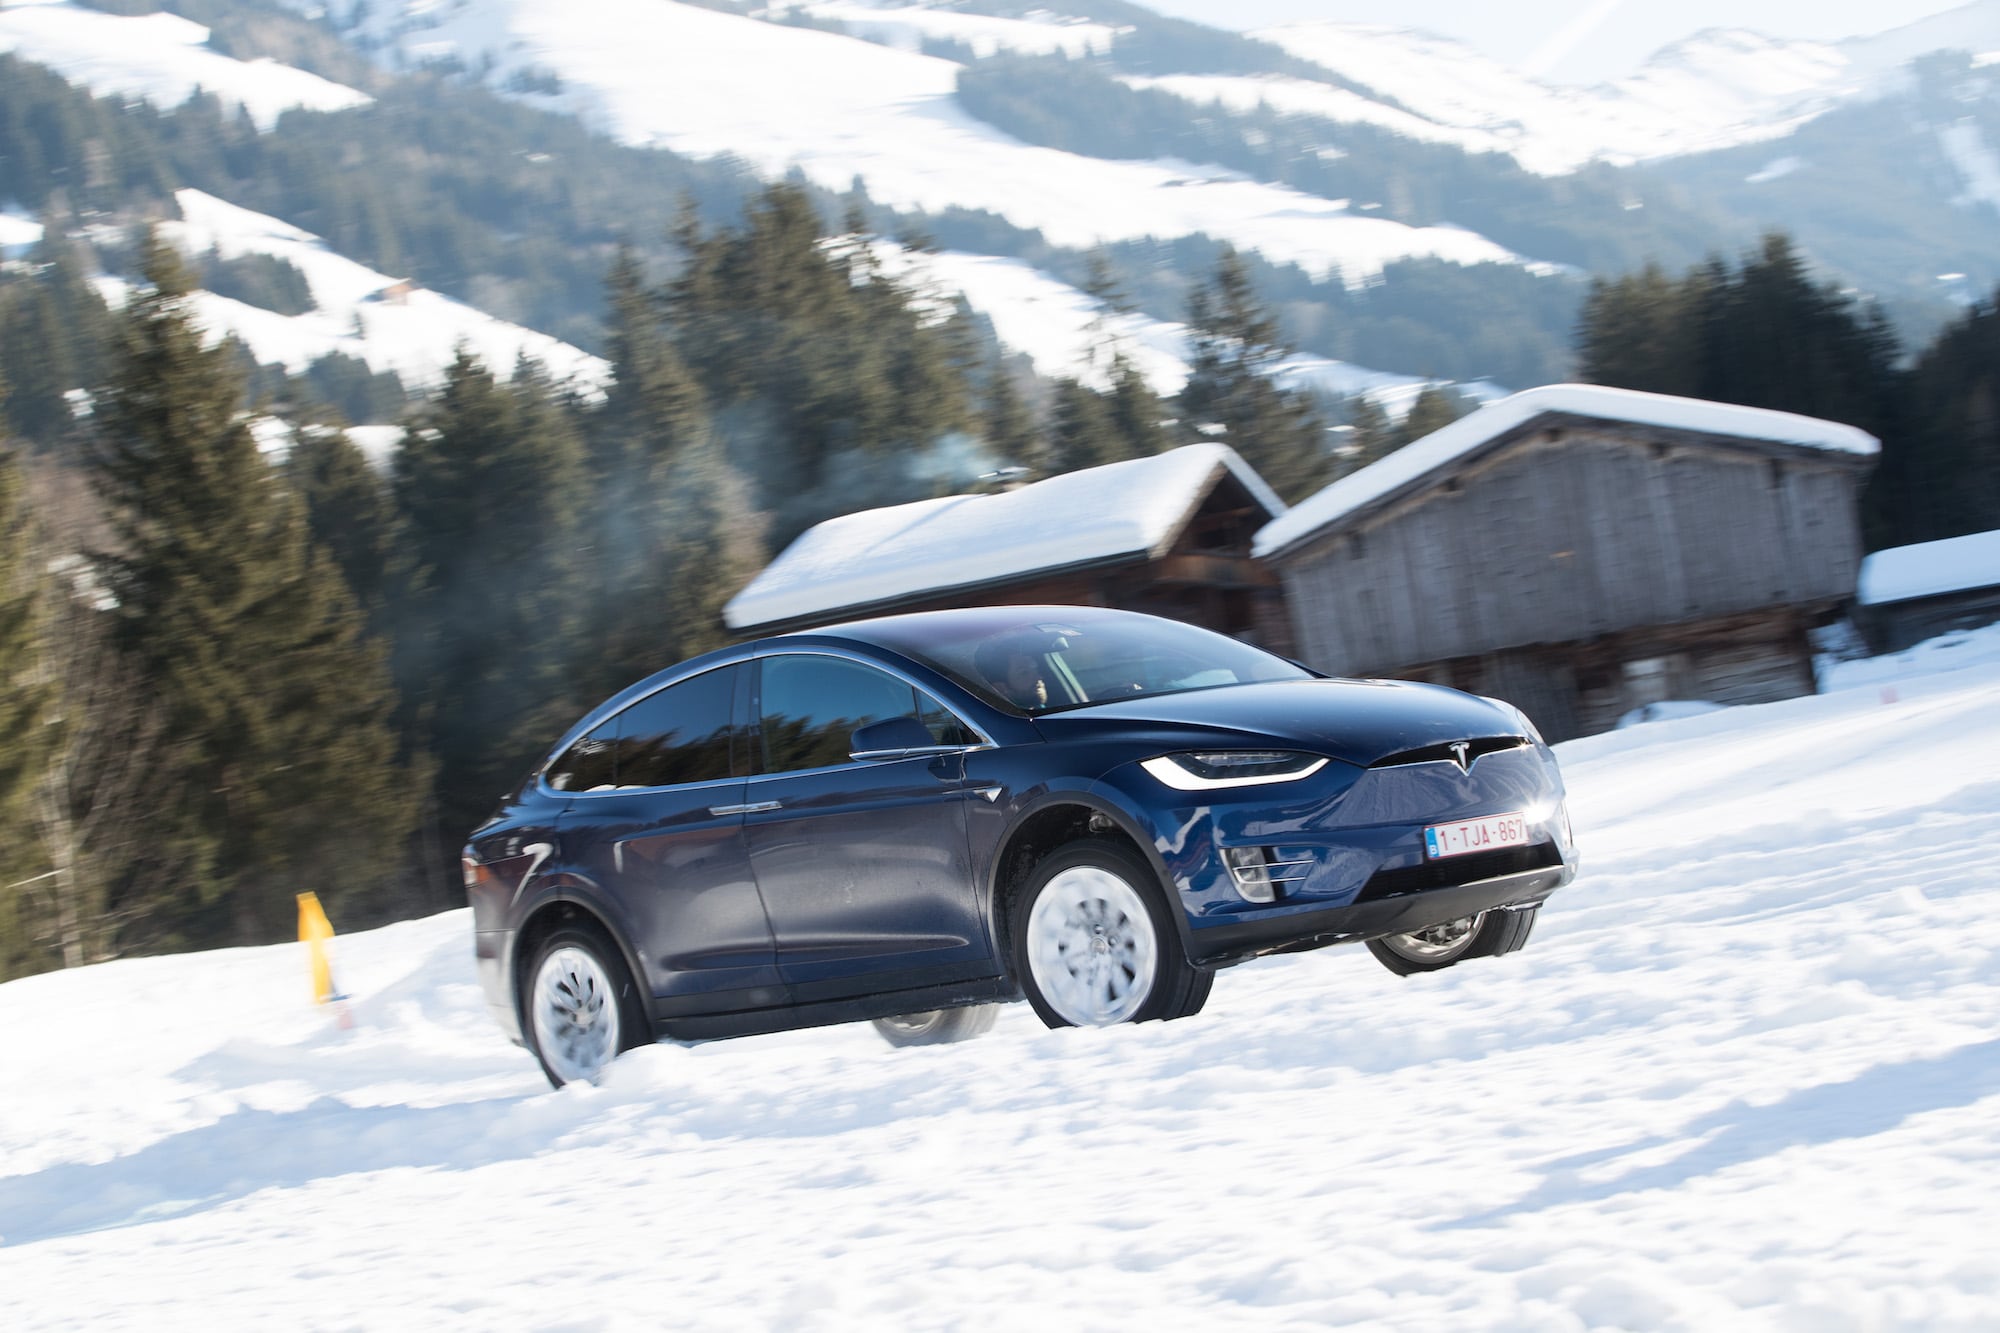 Härteprobe unter winterlichen Bedingungen: Die Tesla Winter Driving Experience 2